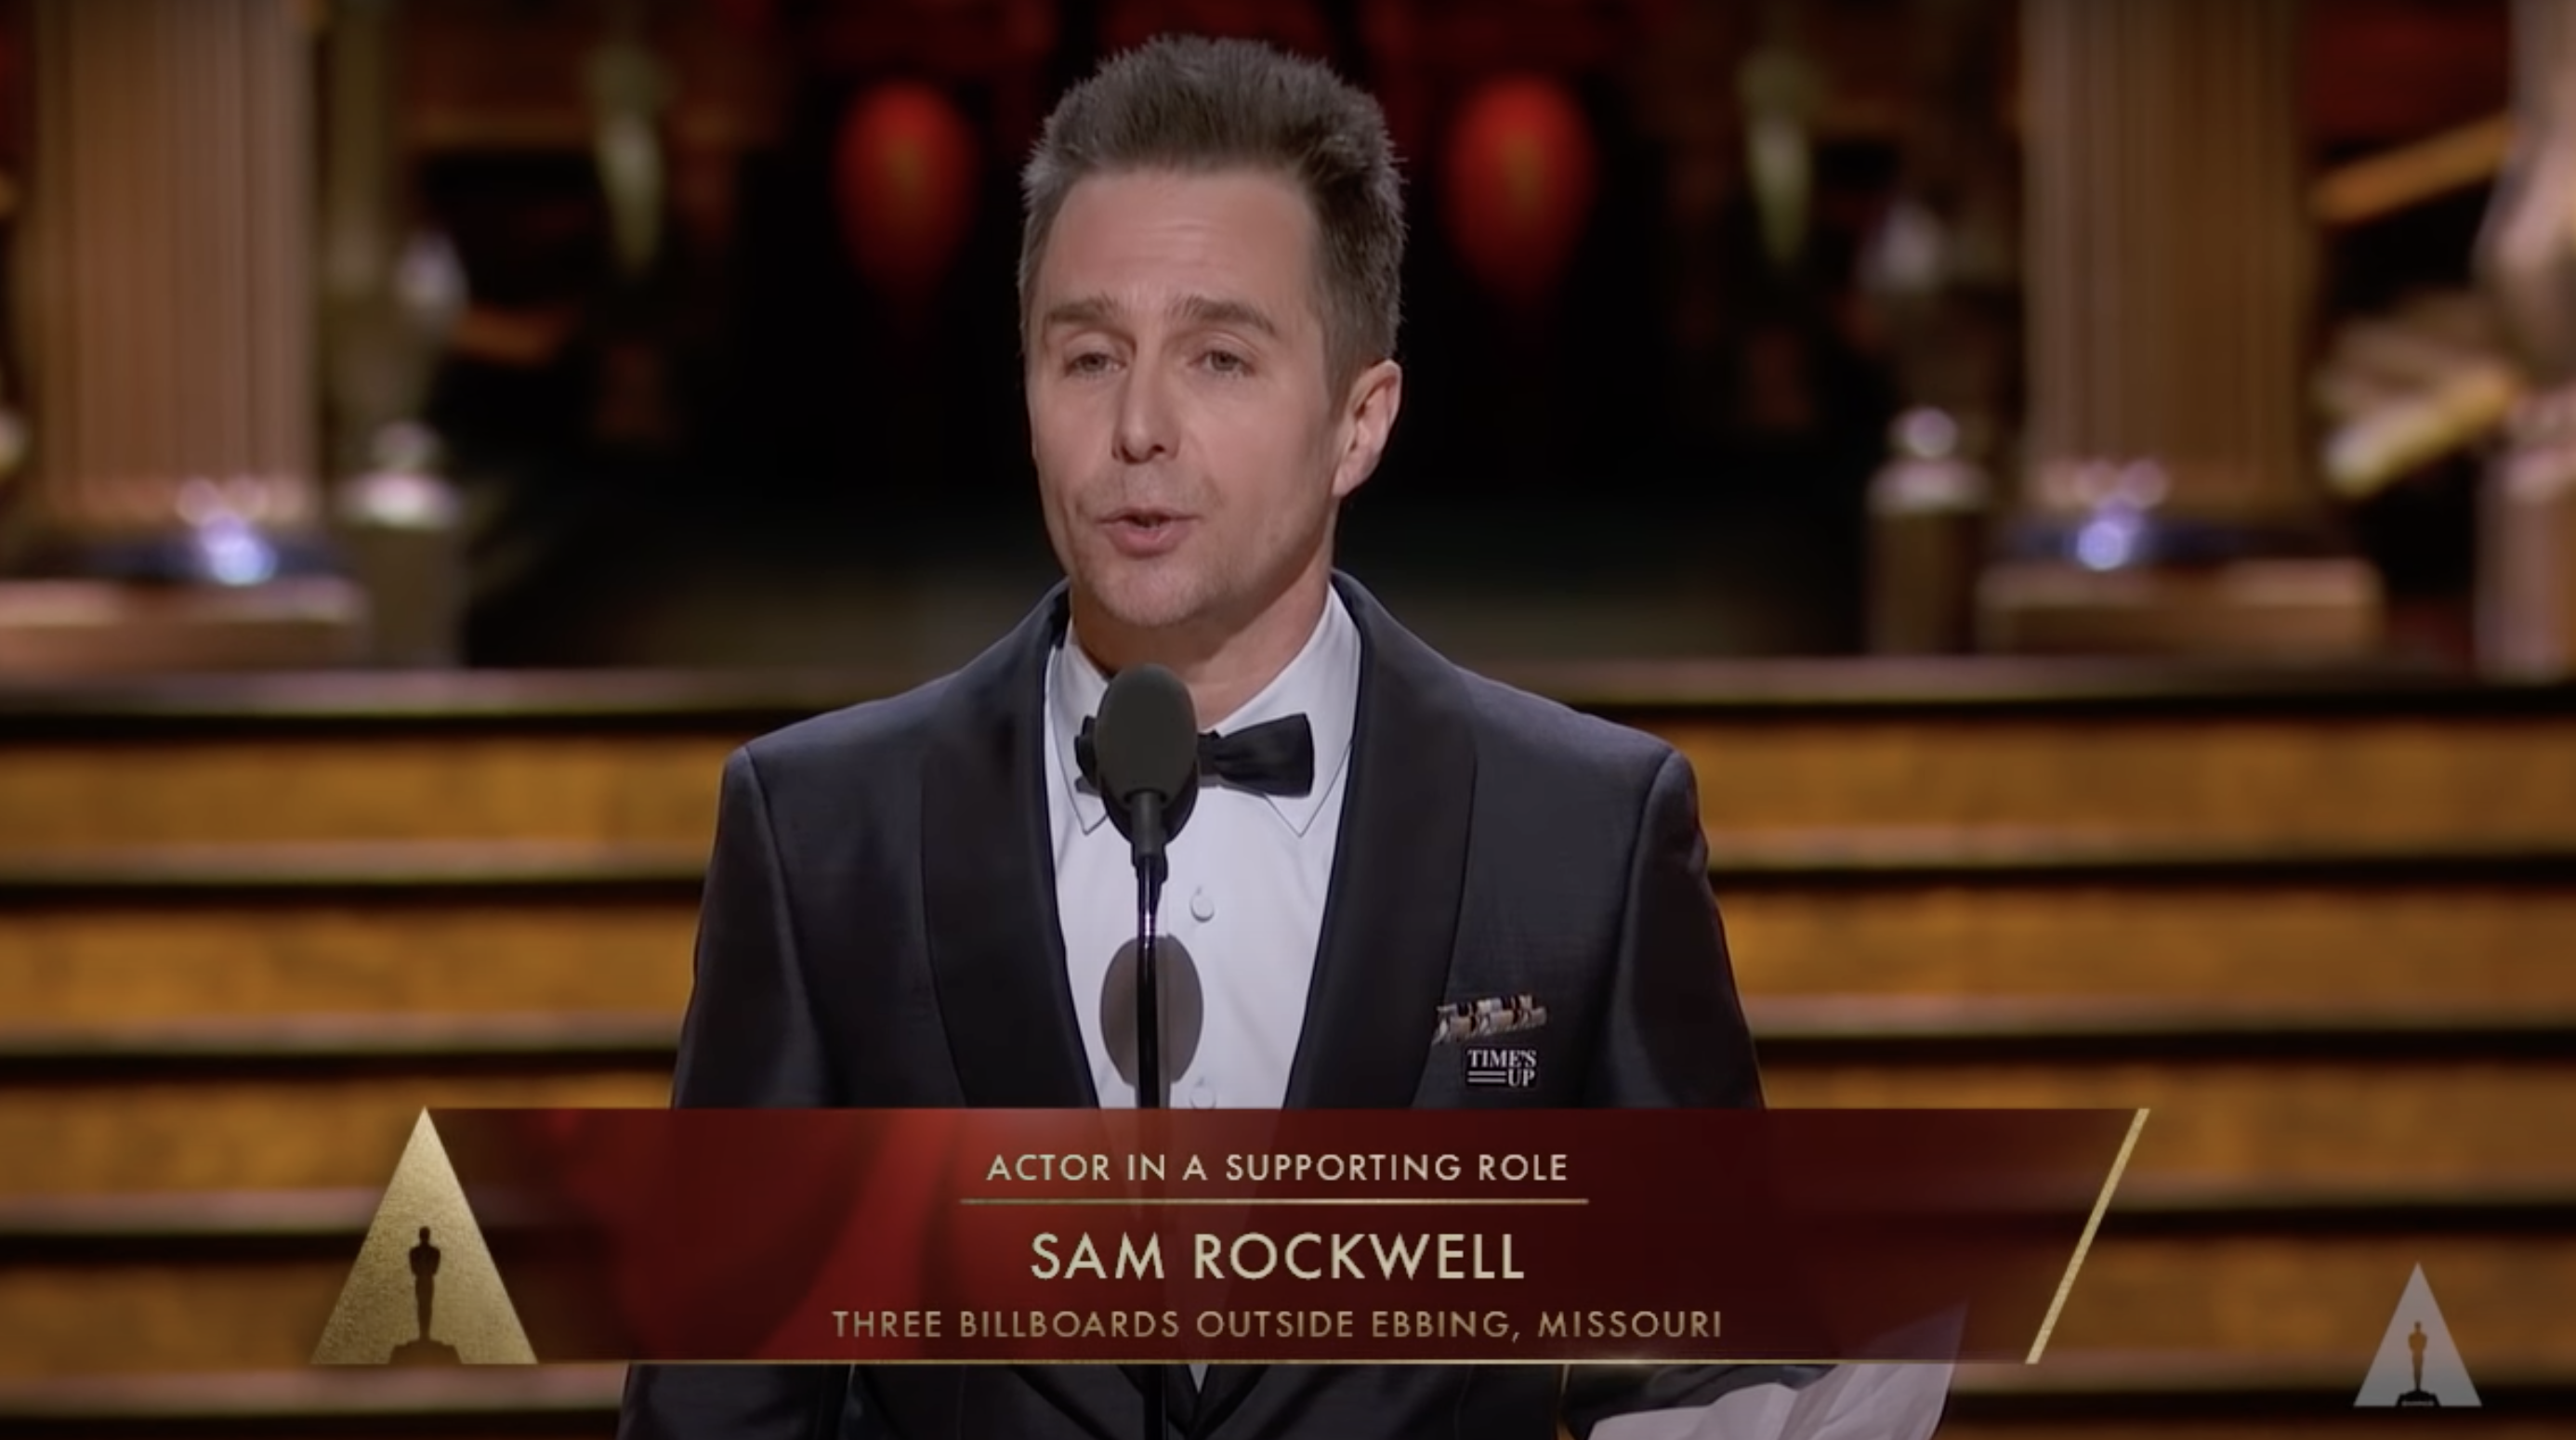 Sam accepting his Oscar